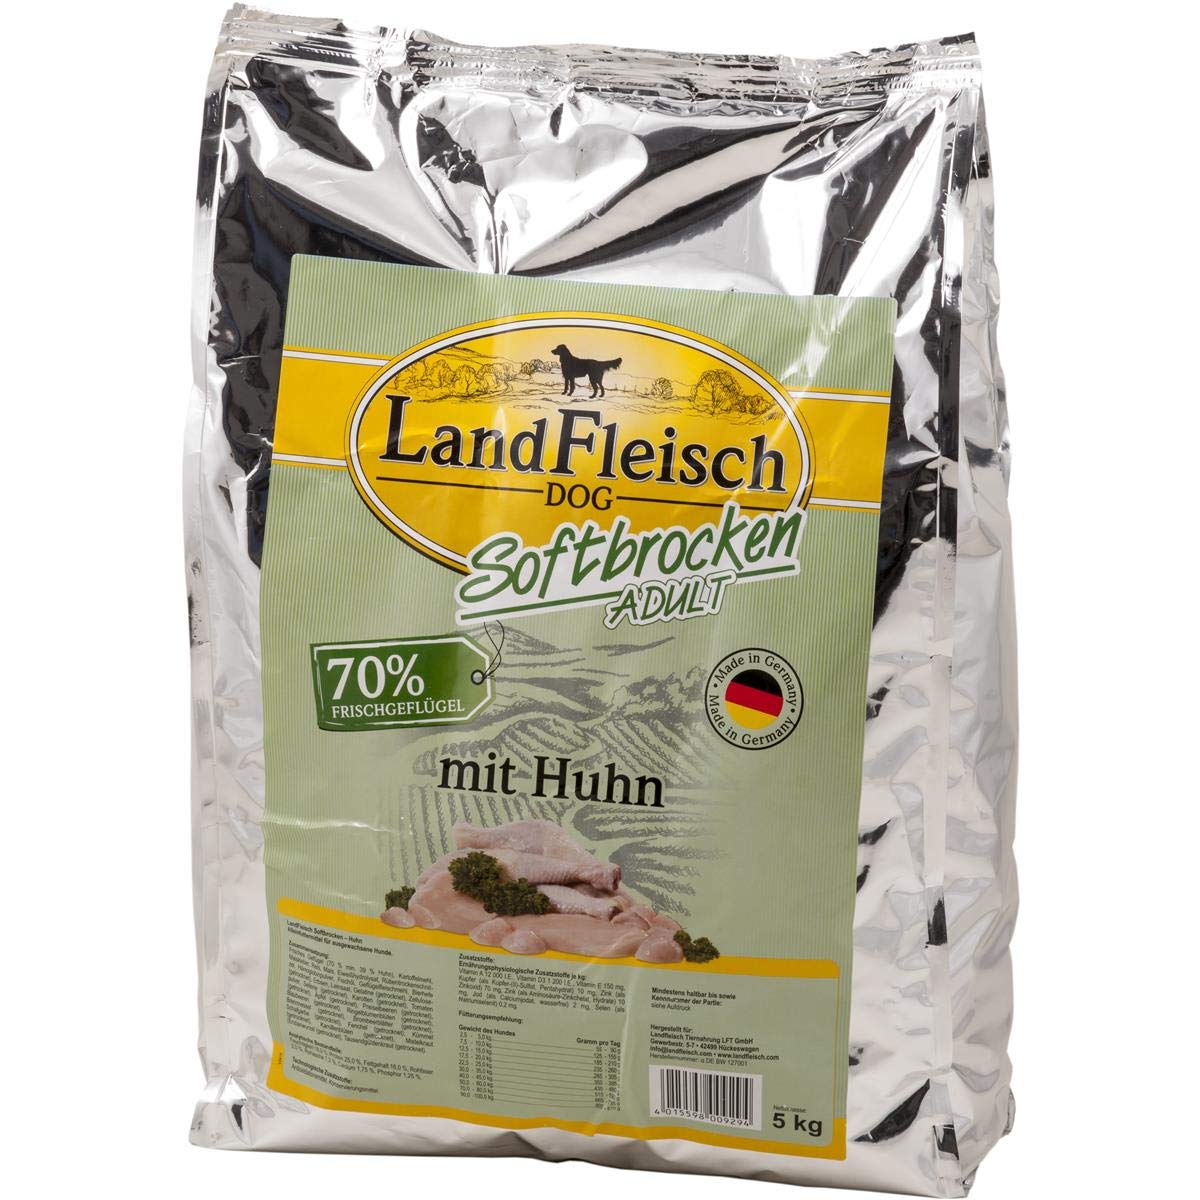 Landfleisch Dog Softbrocken mit Huhn, 1er Pack (1 x 5 kg)